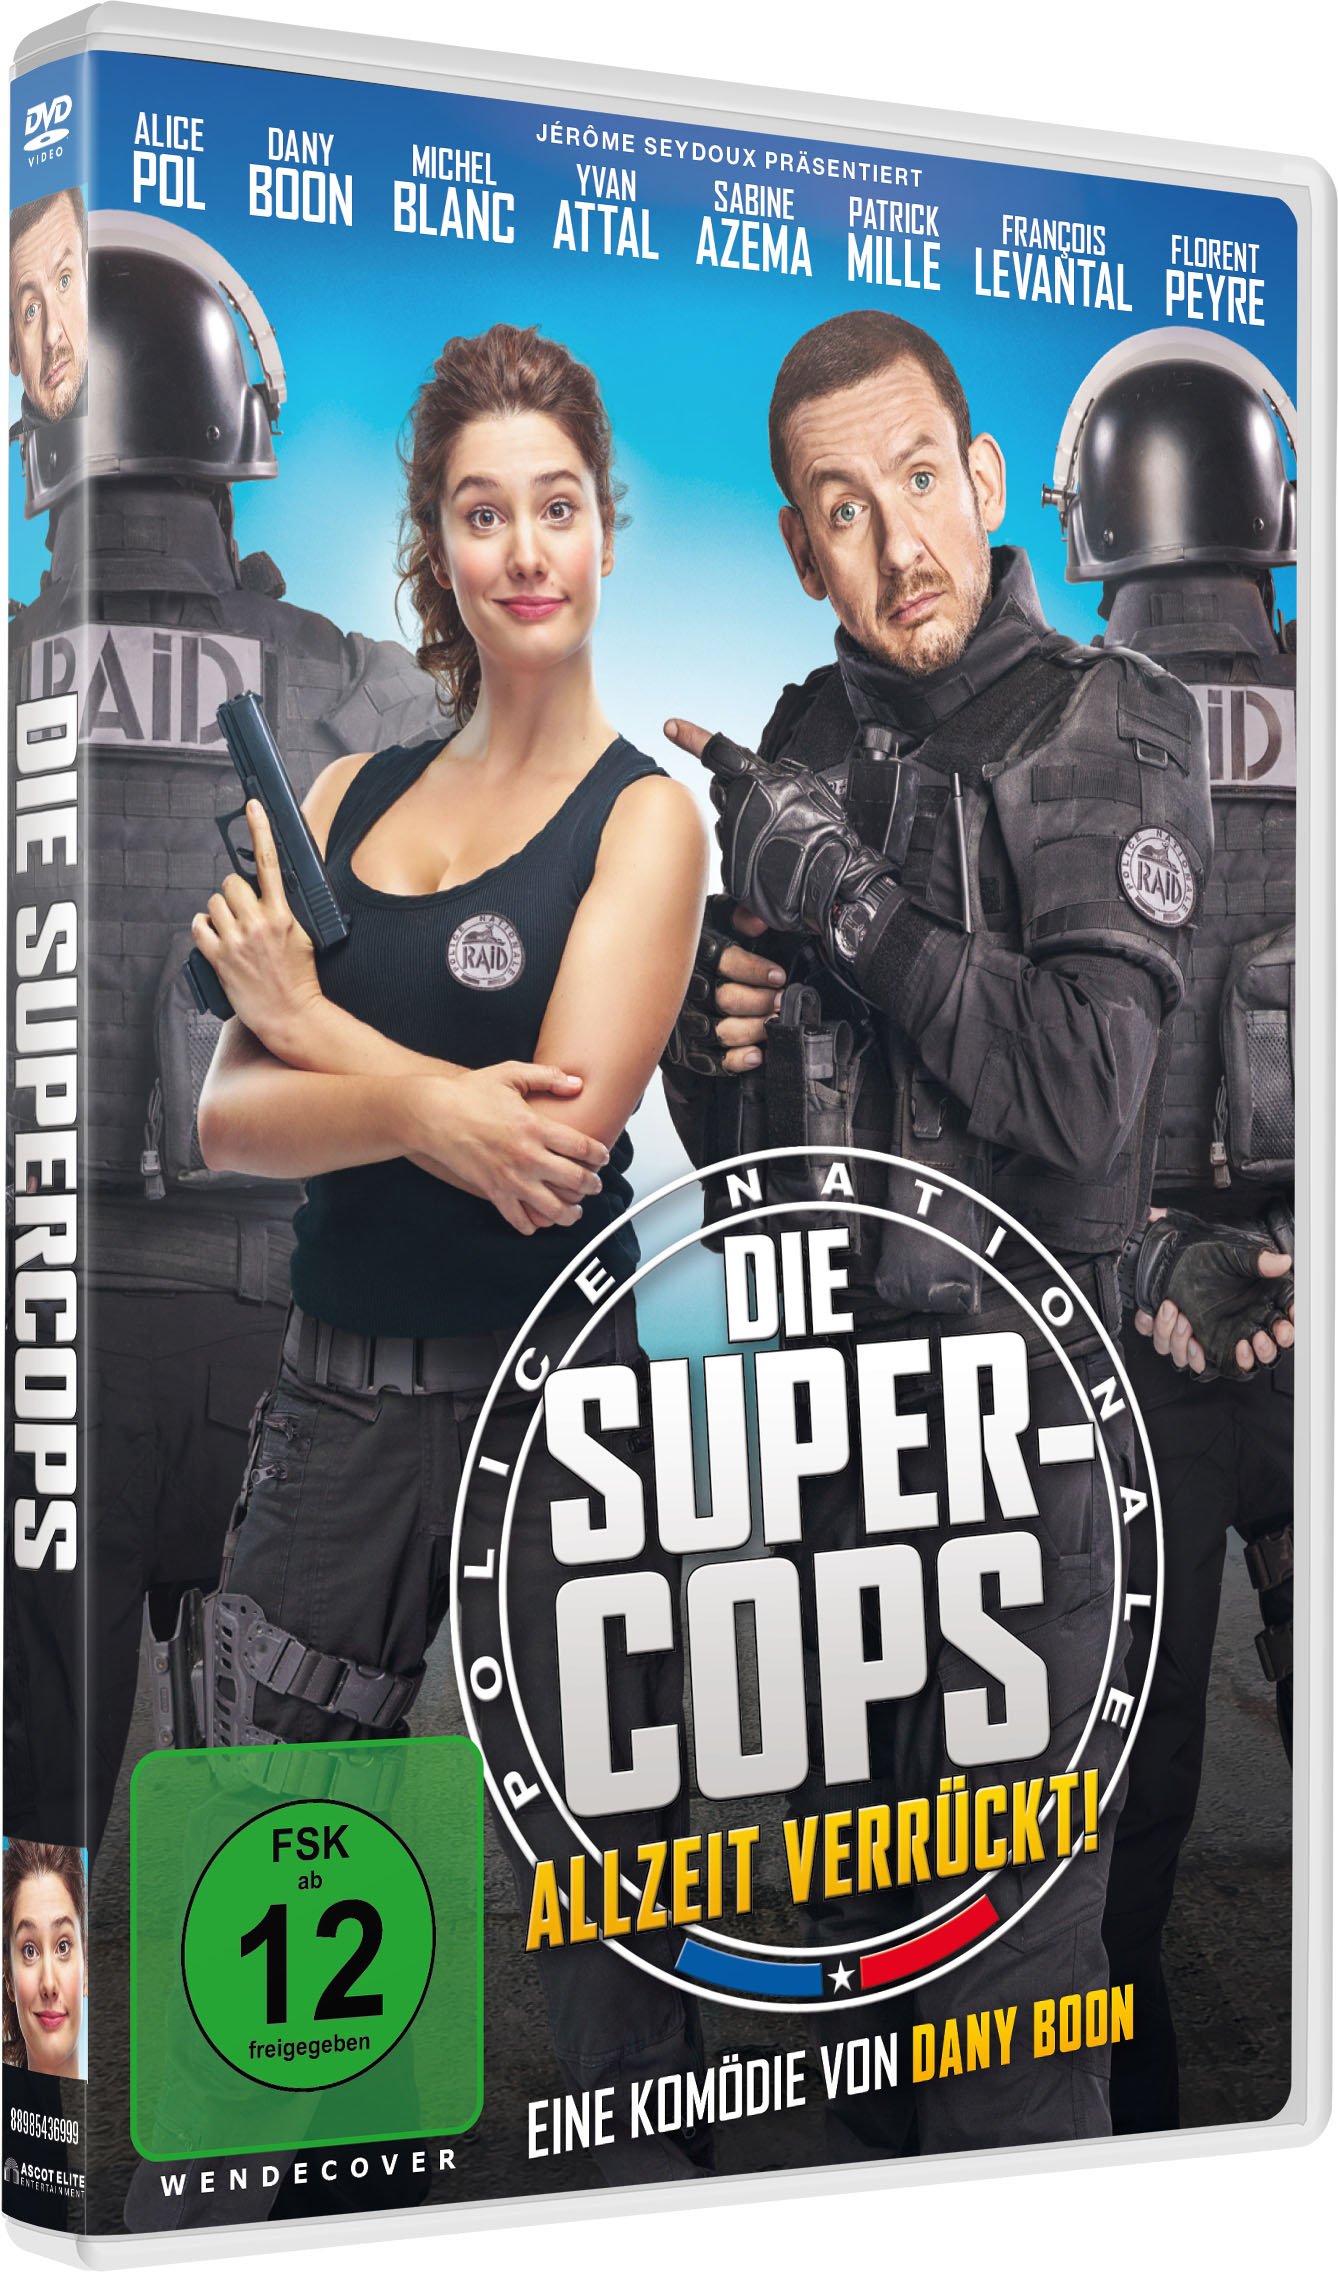 Verrückt! DVD - Allzeit Die Super-Cops